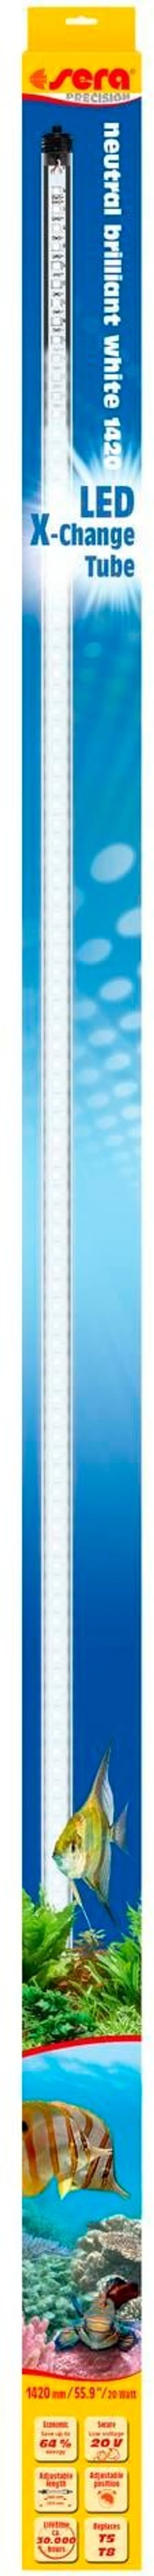 Leuchtmittel LED X-Change Tube NBW, 1420 mm